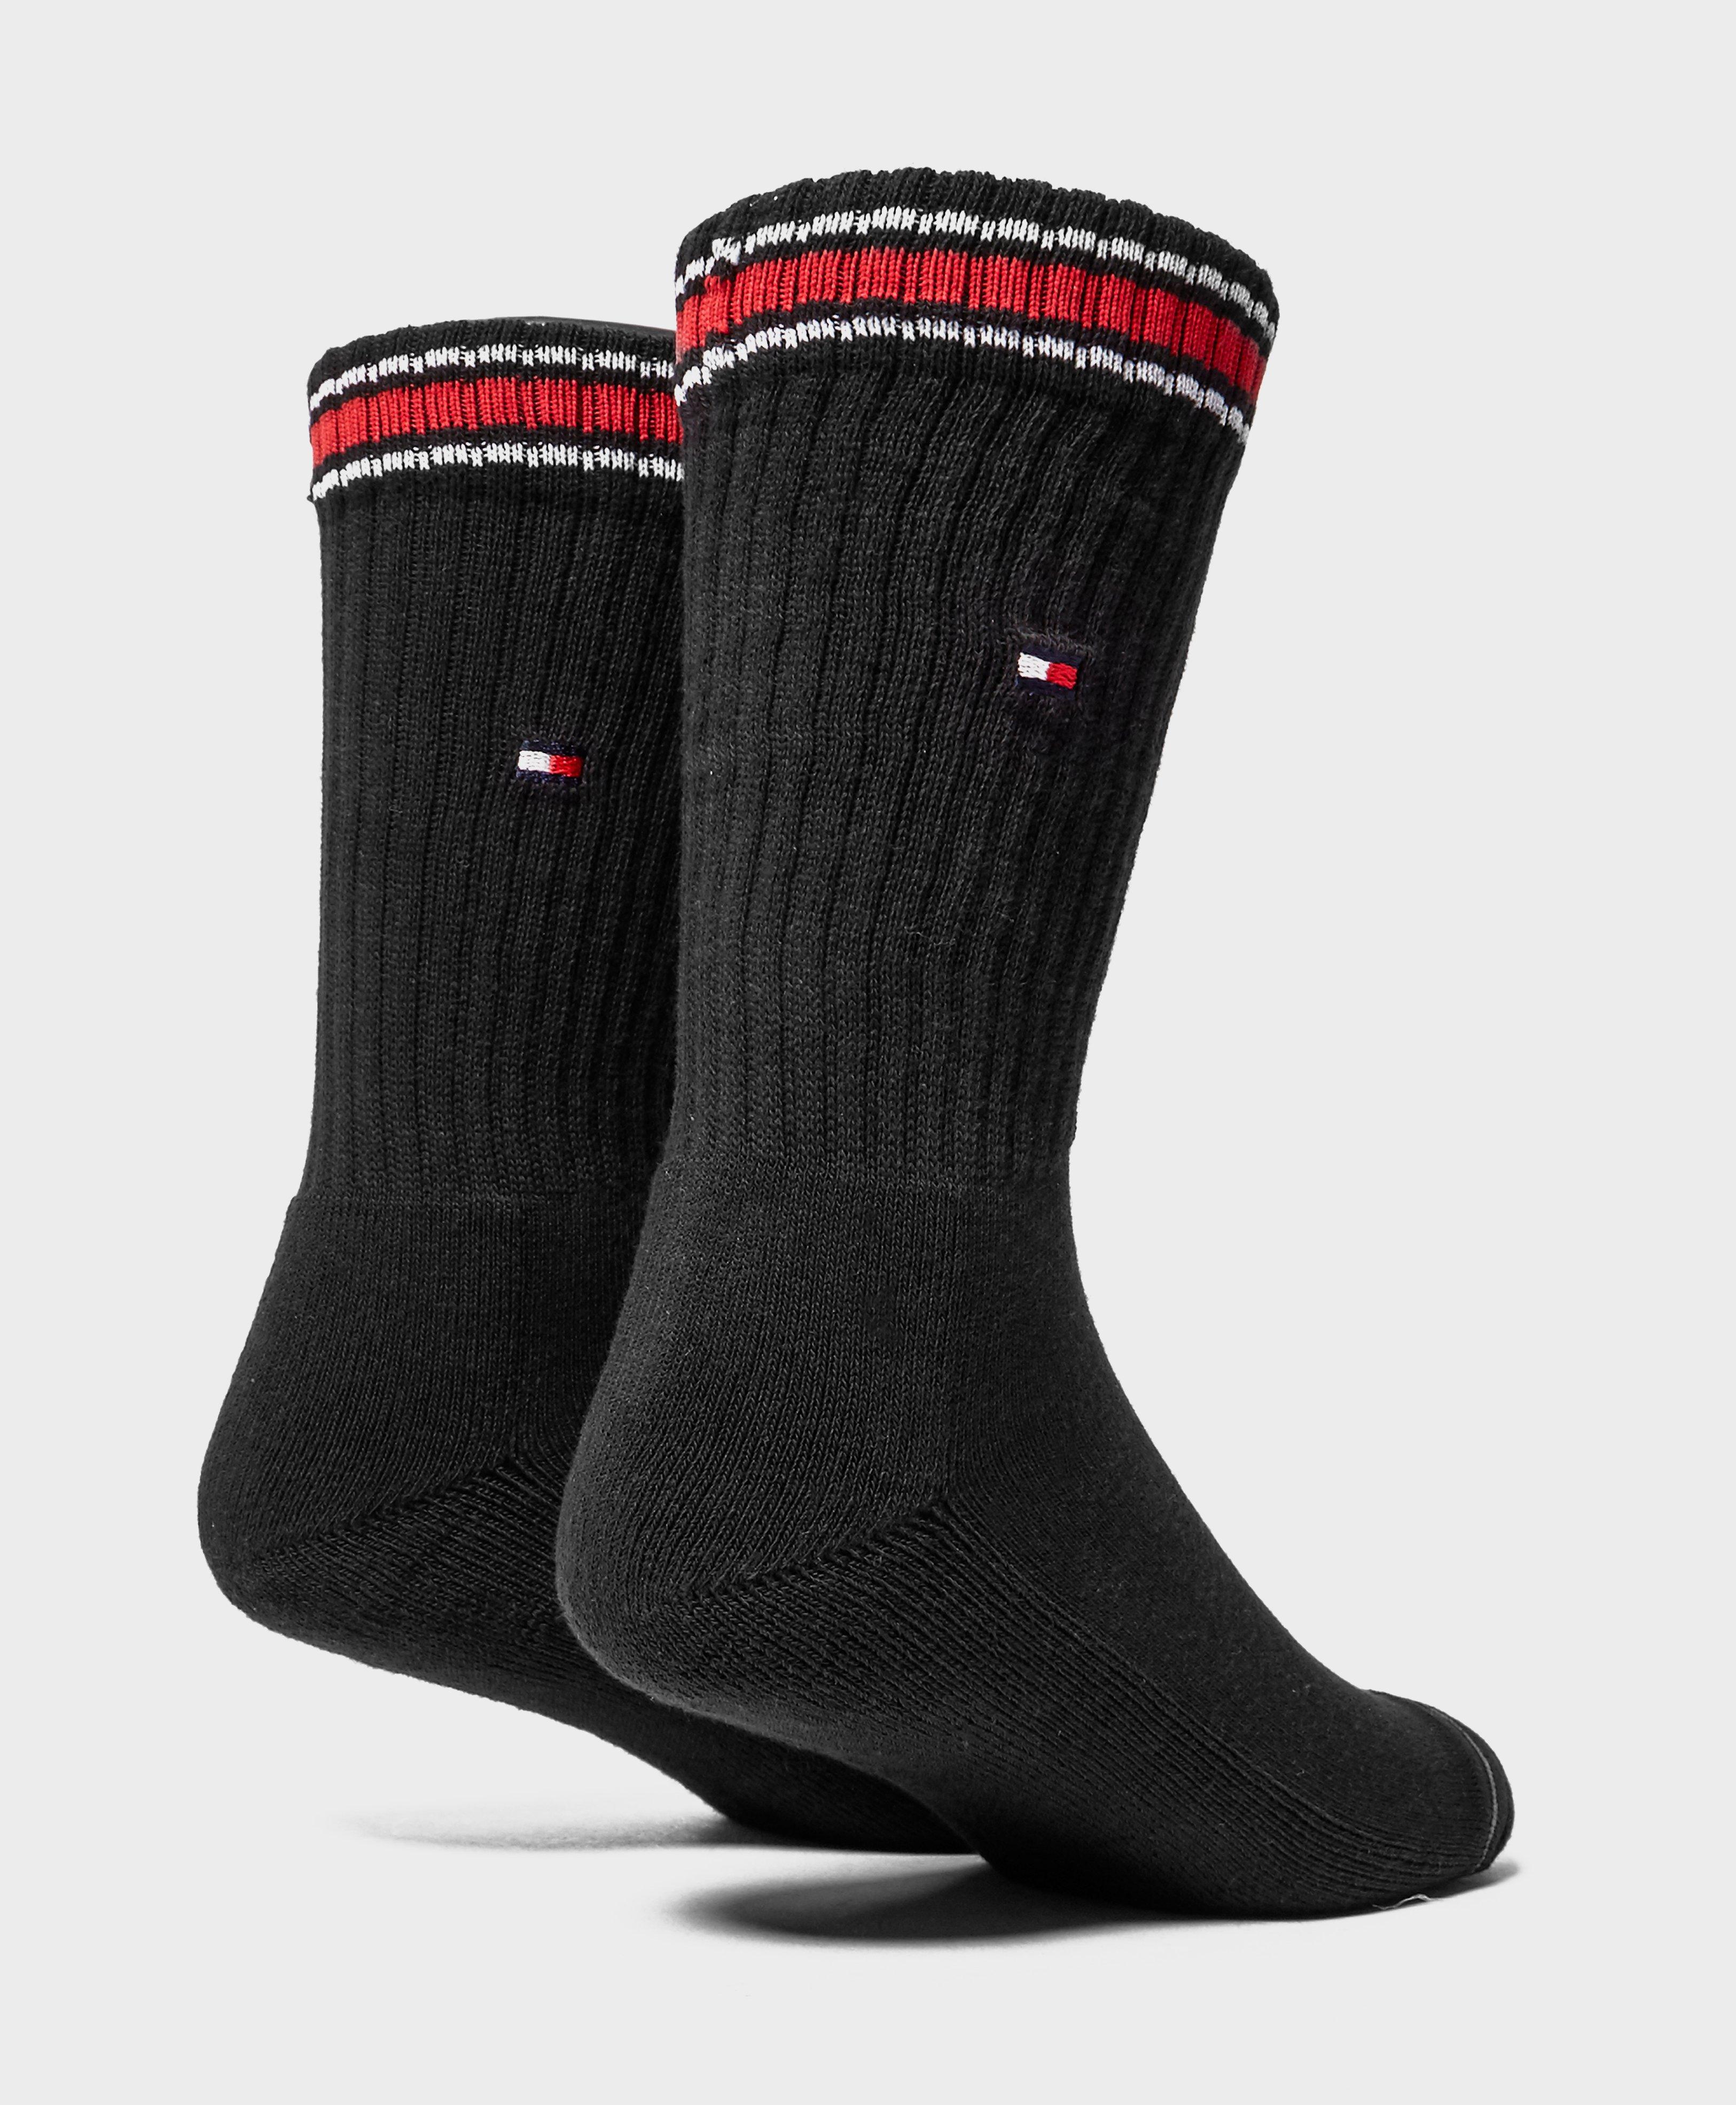 Lyst - Tommy Hilfiger 2-pack Crew Socks in Black for Men